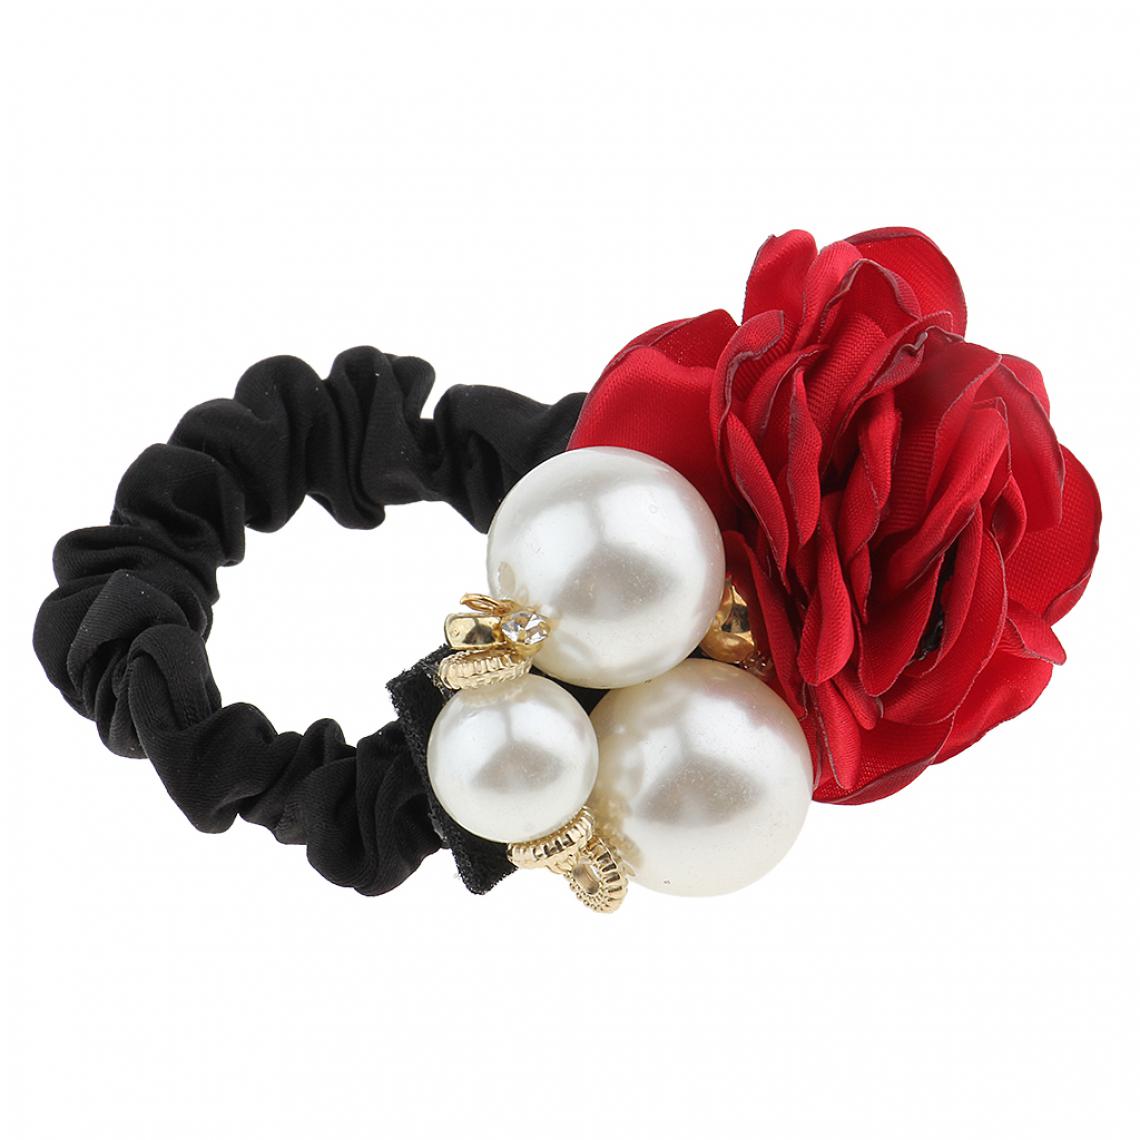 marque generique - mode fausse perle rose fleur cheveux corde bande de caoutchouc cheveux cravates vin rouge - Perles